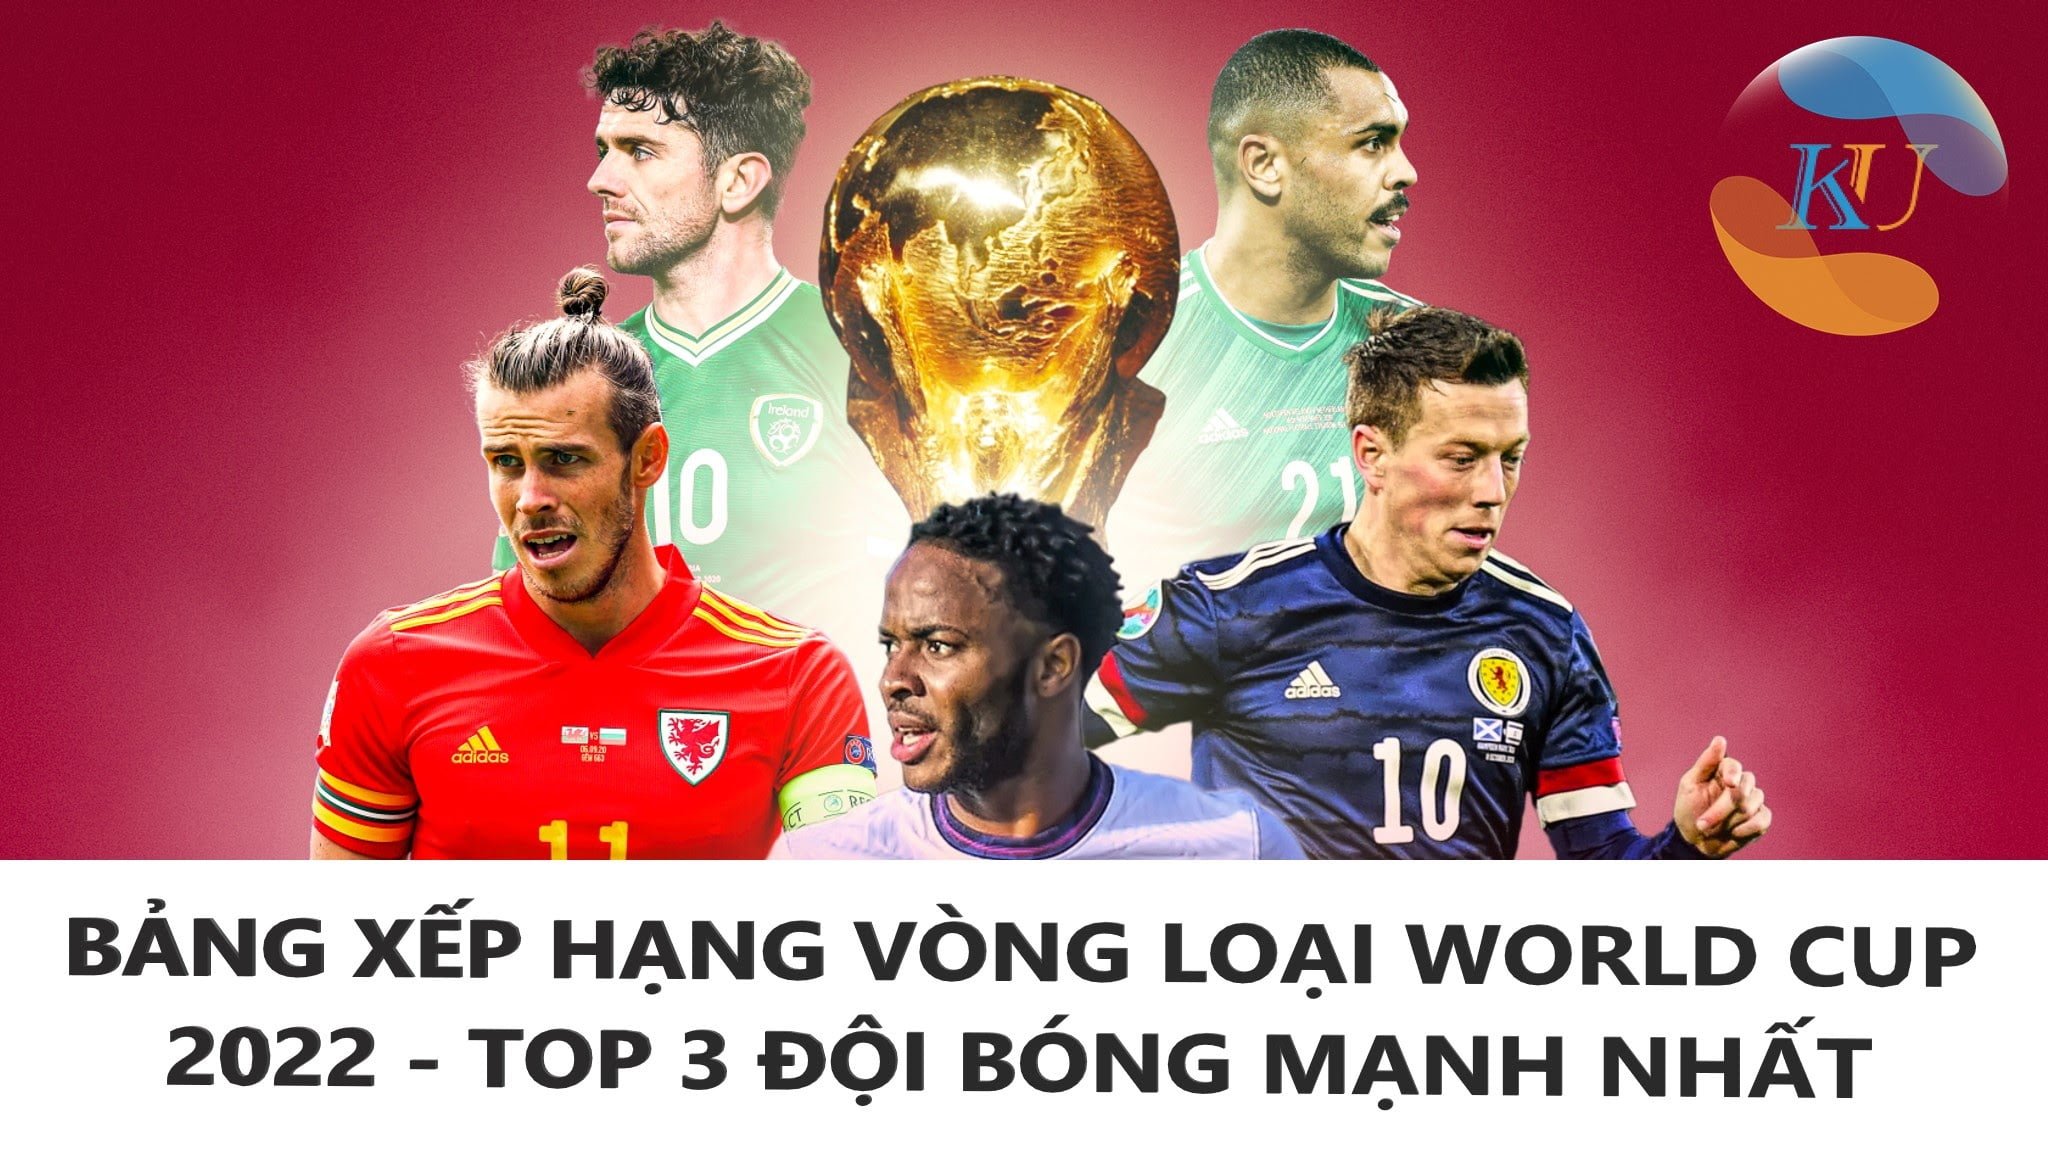 VÒNG LOẠI WC 2022 - TOP 3 ĐỘI BÓNG MẠNH NHẤT